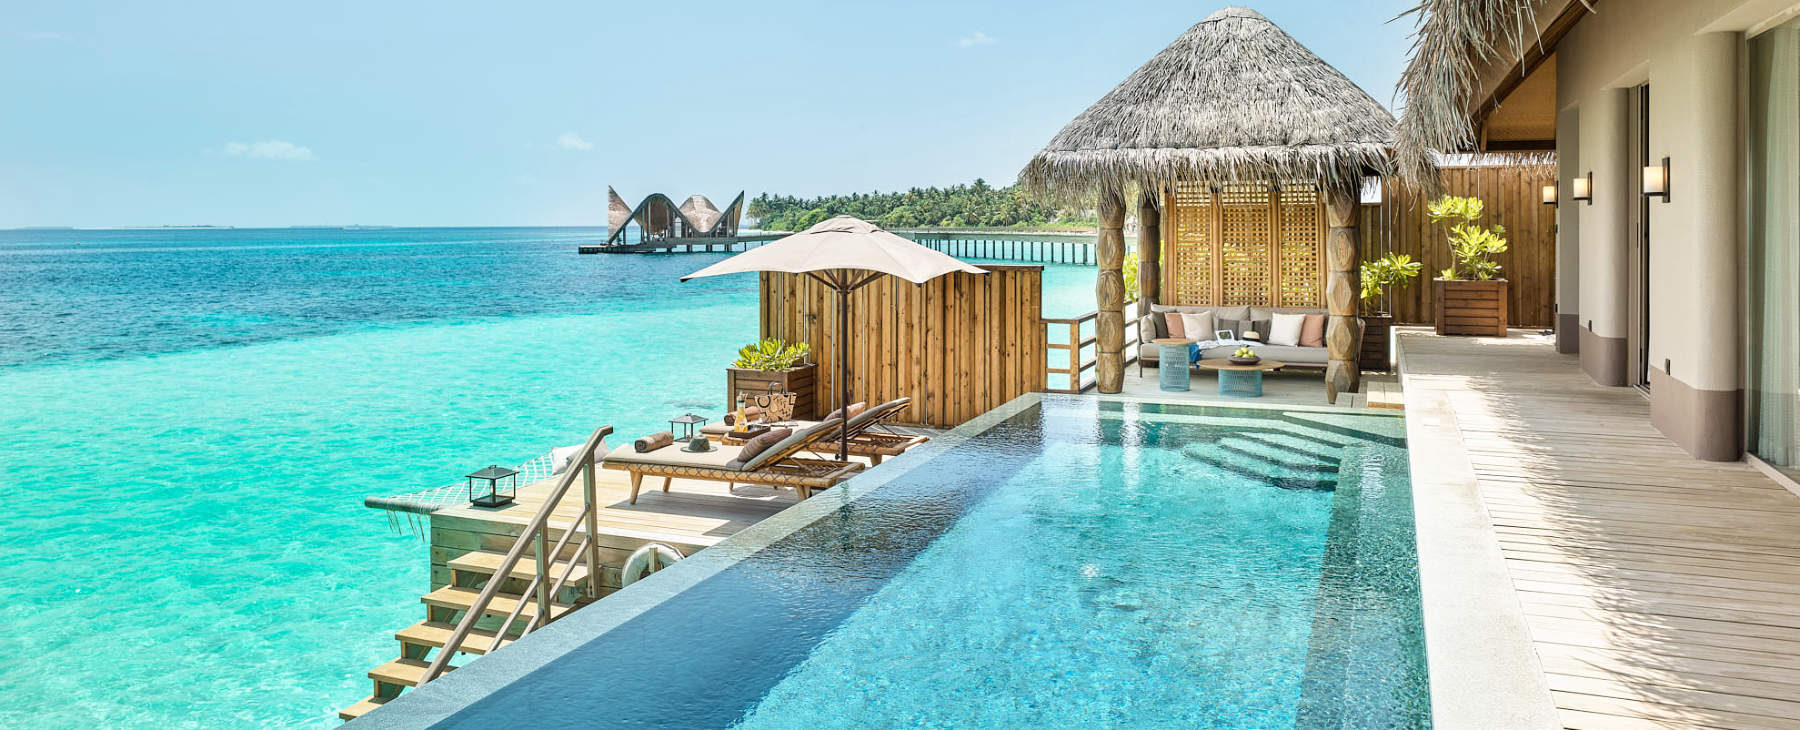 Luxushotel Joali Malediven